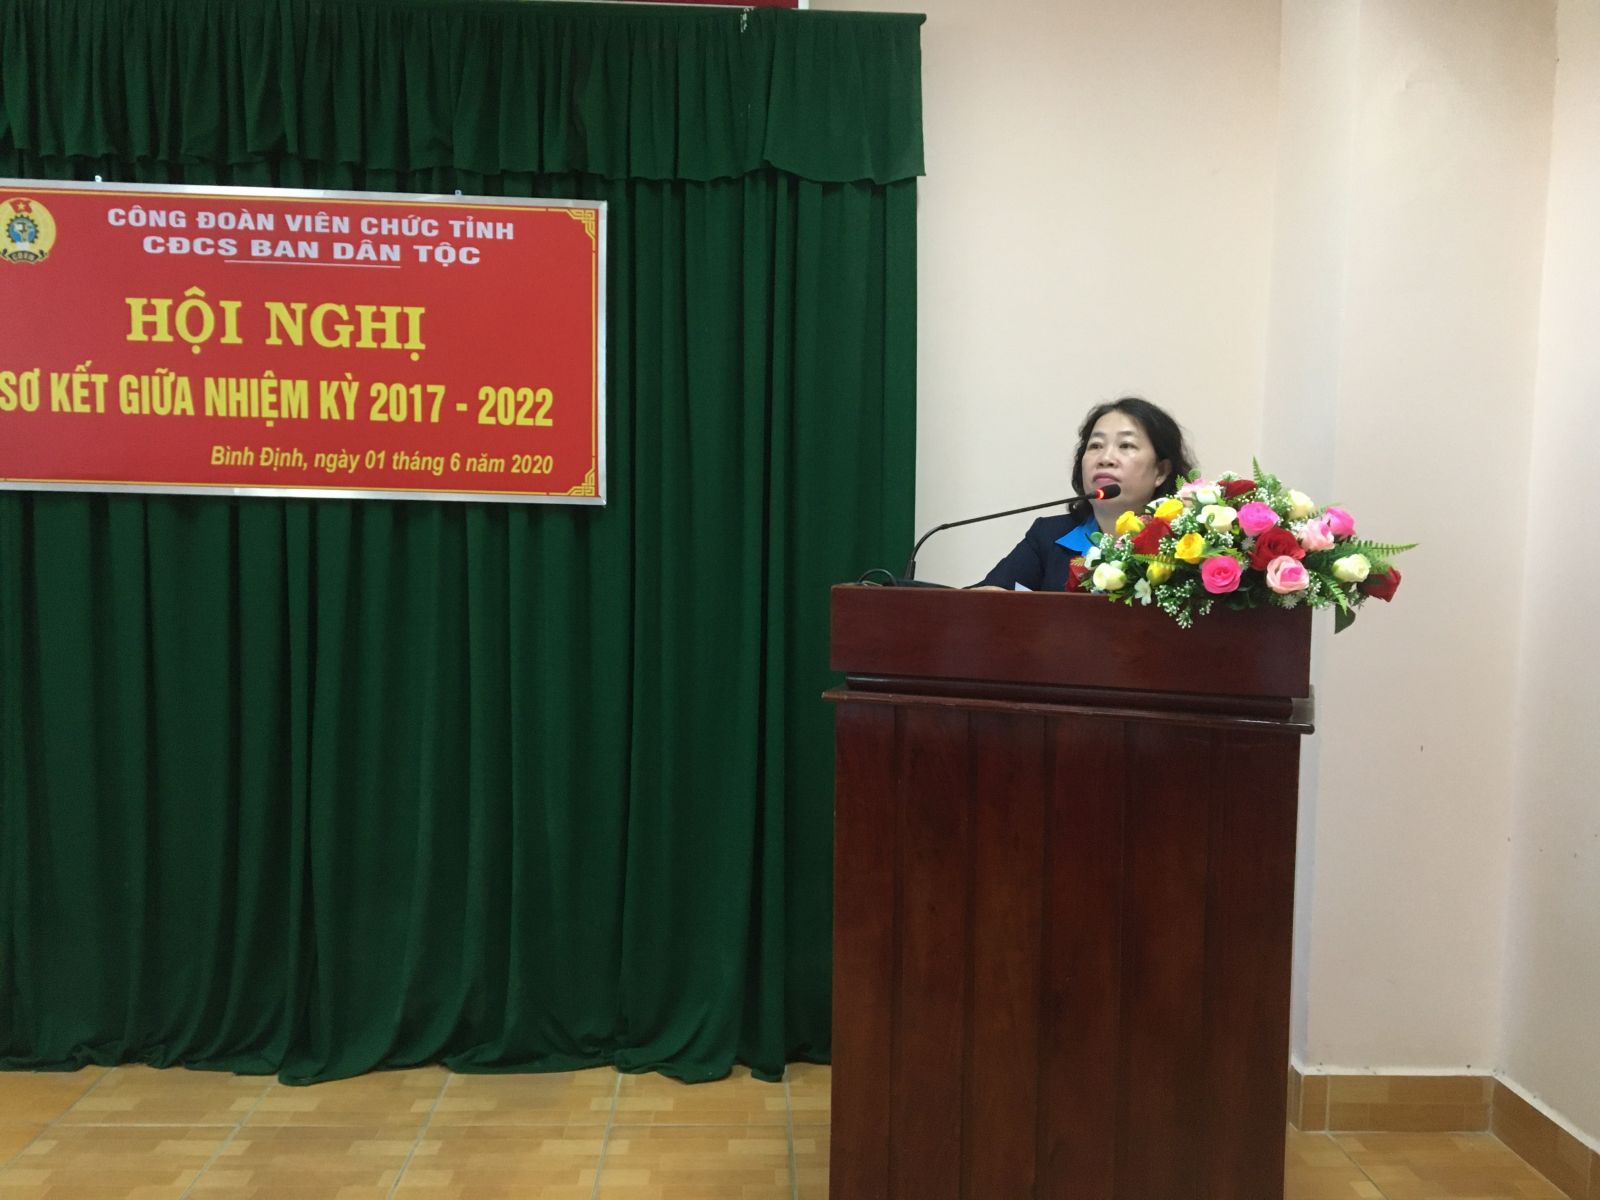 Hội nghị sơ kết giữa nhiệm kỳ (2017-2022) Công đoàn cơ sở  Ban Dân tộc tỉnh Bình Định